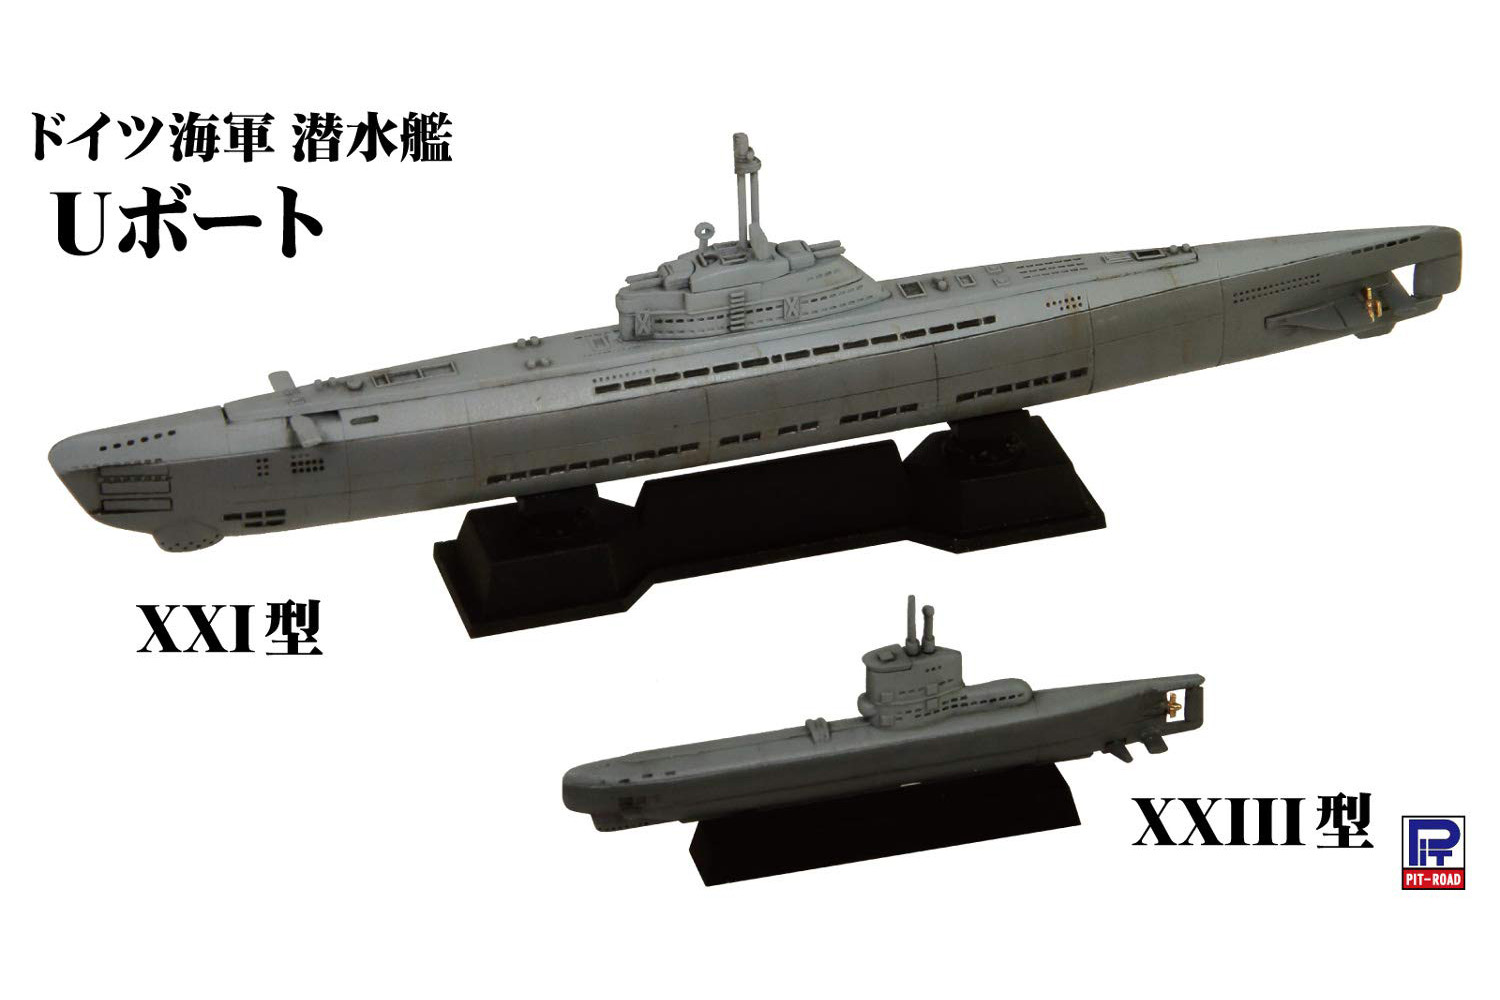 スカイウェーブシリーズ『ドイツ海軍 潜水艦 Uボート XXI型＆XXIII型』1/700 プラモデル-002